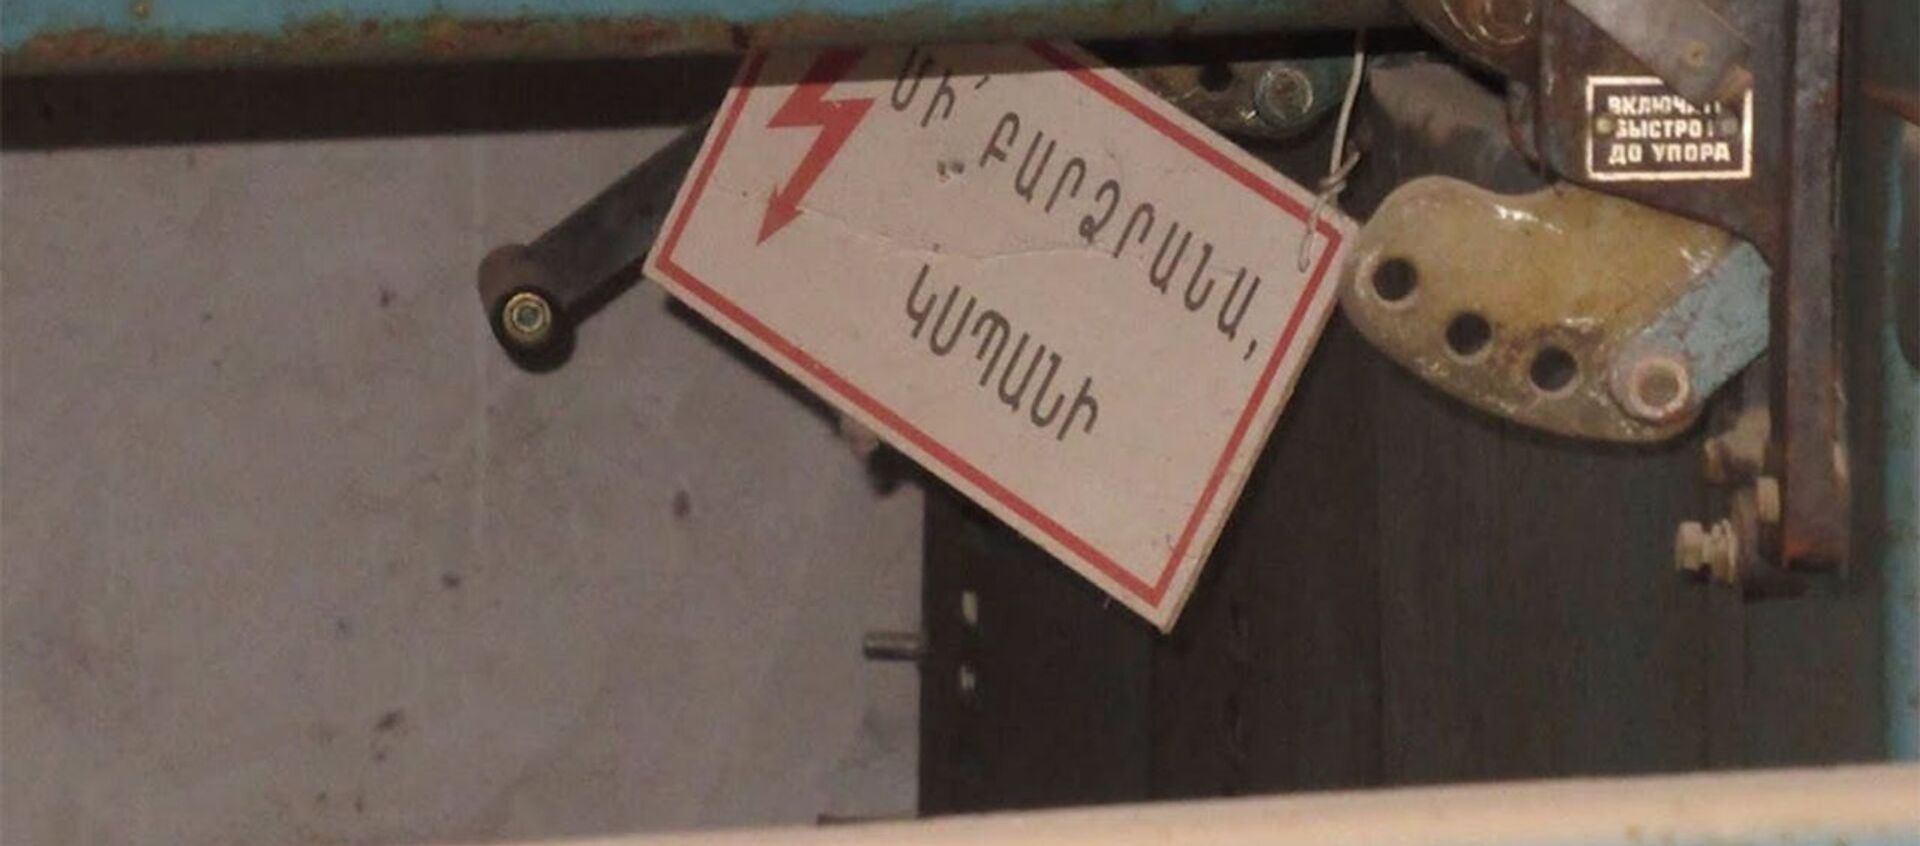 Մահ՝ գողության պահին․ Արմավիրի ոստիկանների բացահայտումը - Sputnik Արմենիա, 1920, 29.03.2021